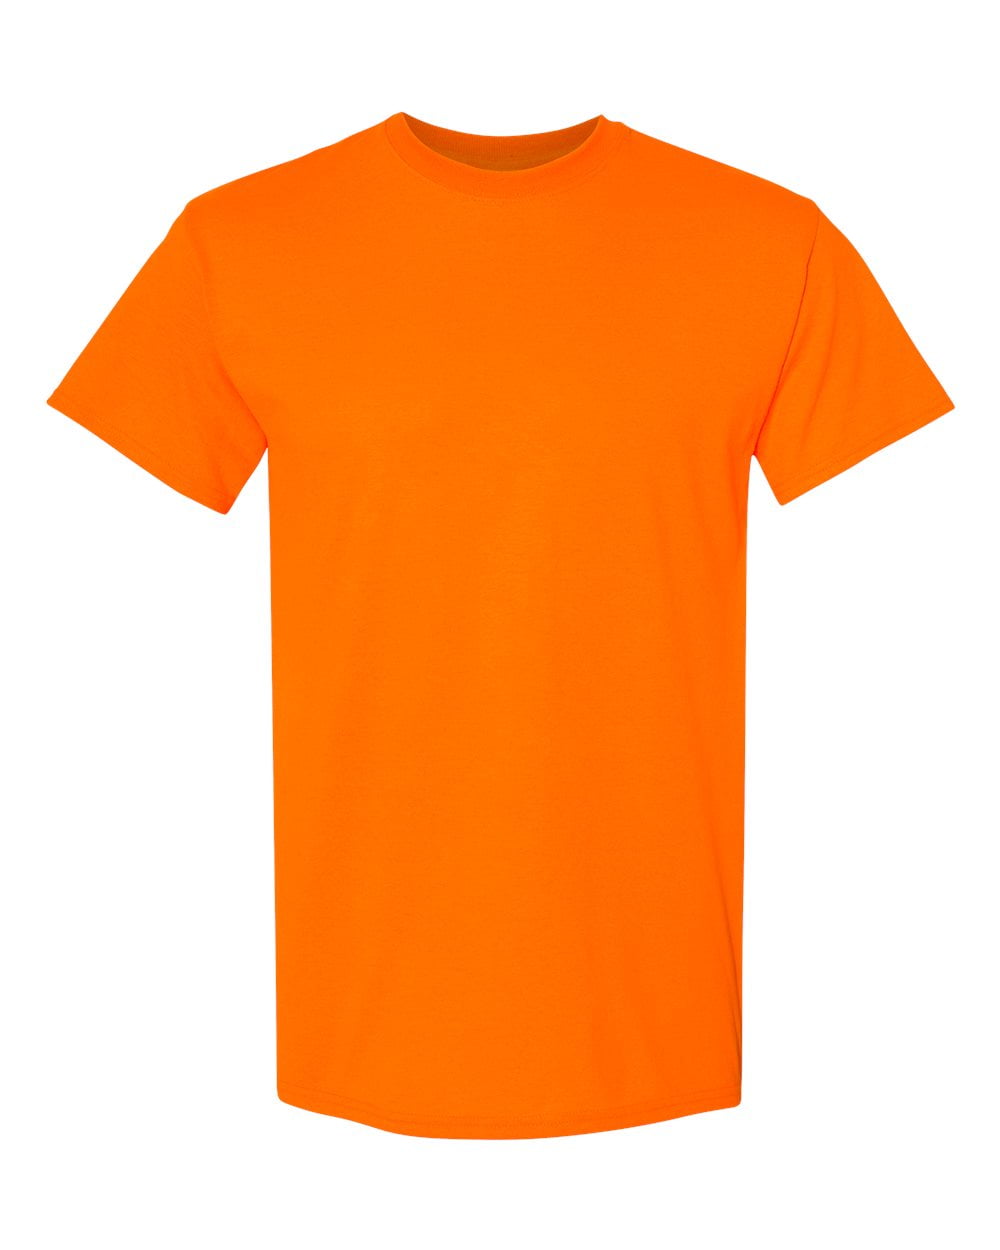 OXI - Men Heavy Cotton Multi Colors T-Shirt Color Safety Orange 3X ...